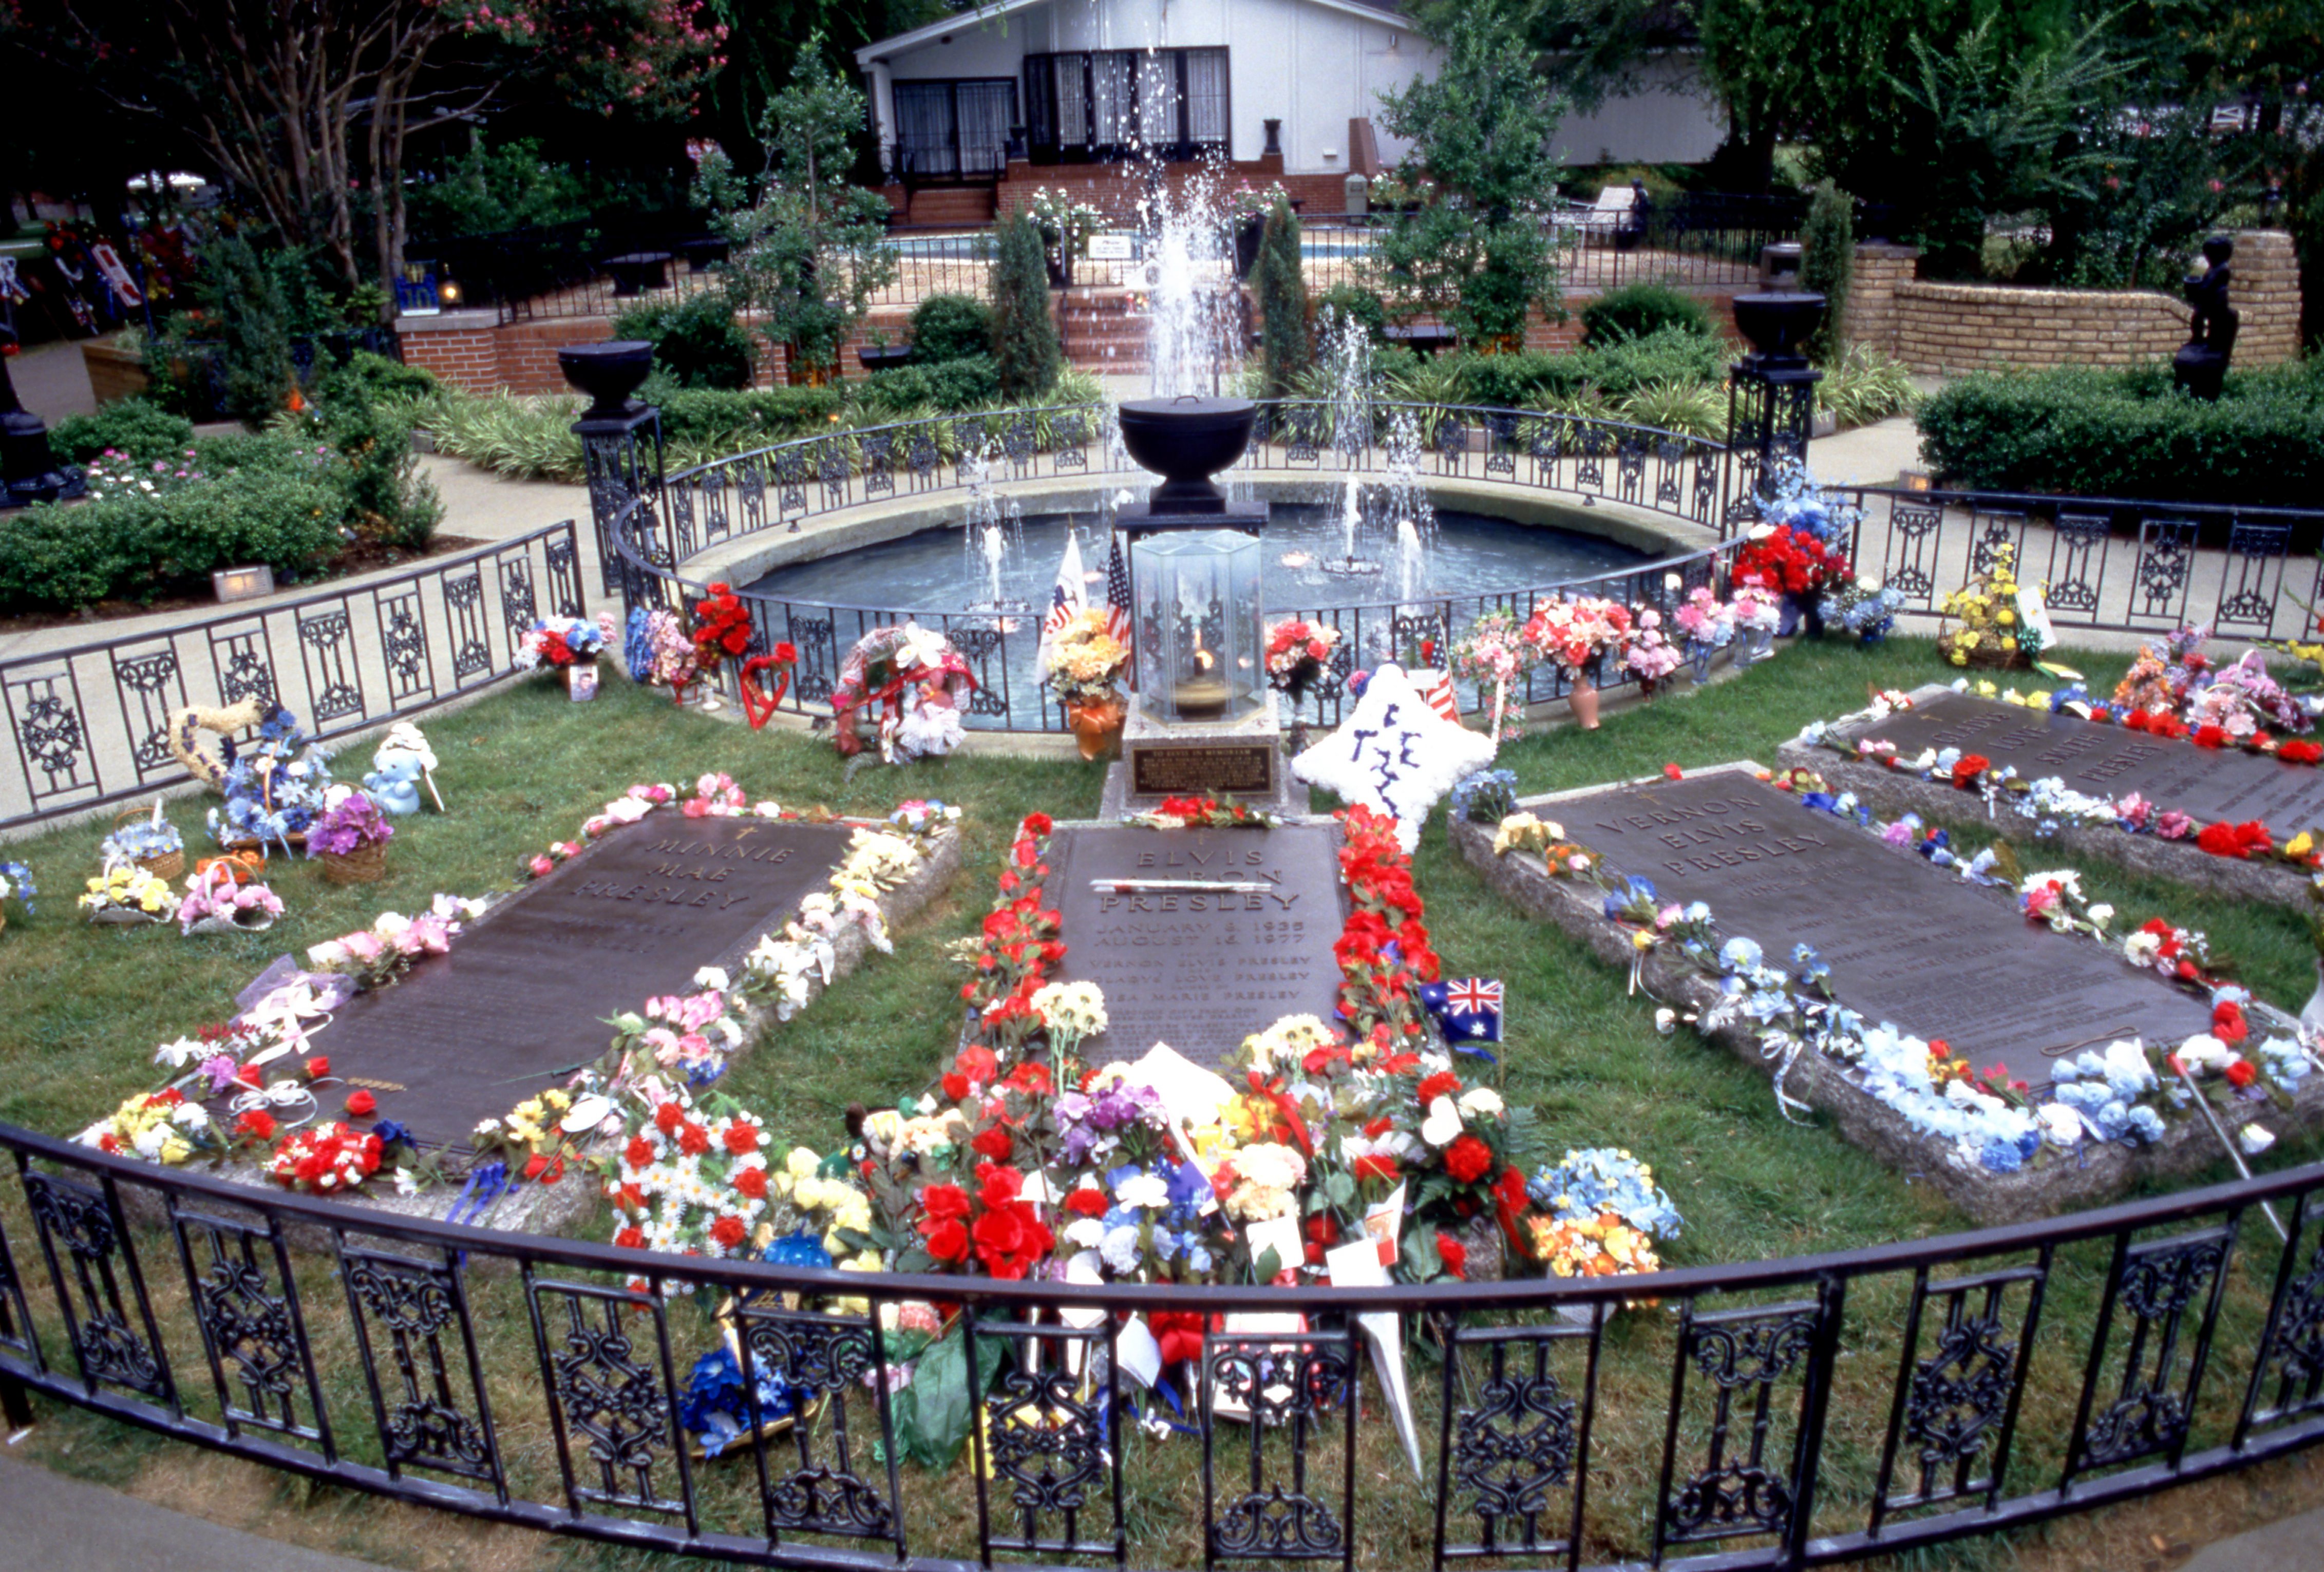 Las lápidas de Minnie Mae Presley, Elvis Aaron Presley, Vernon Elvis Presley y Gladys Love Smith Presley antes del décimo aniversario de la muerte de Elvis el 15 de agosto de 1987 en Graceland en Memphis, Tennessee | Foto: Getty Images